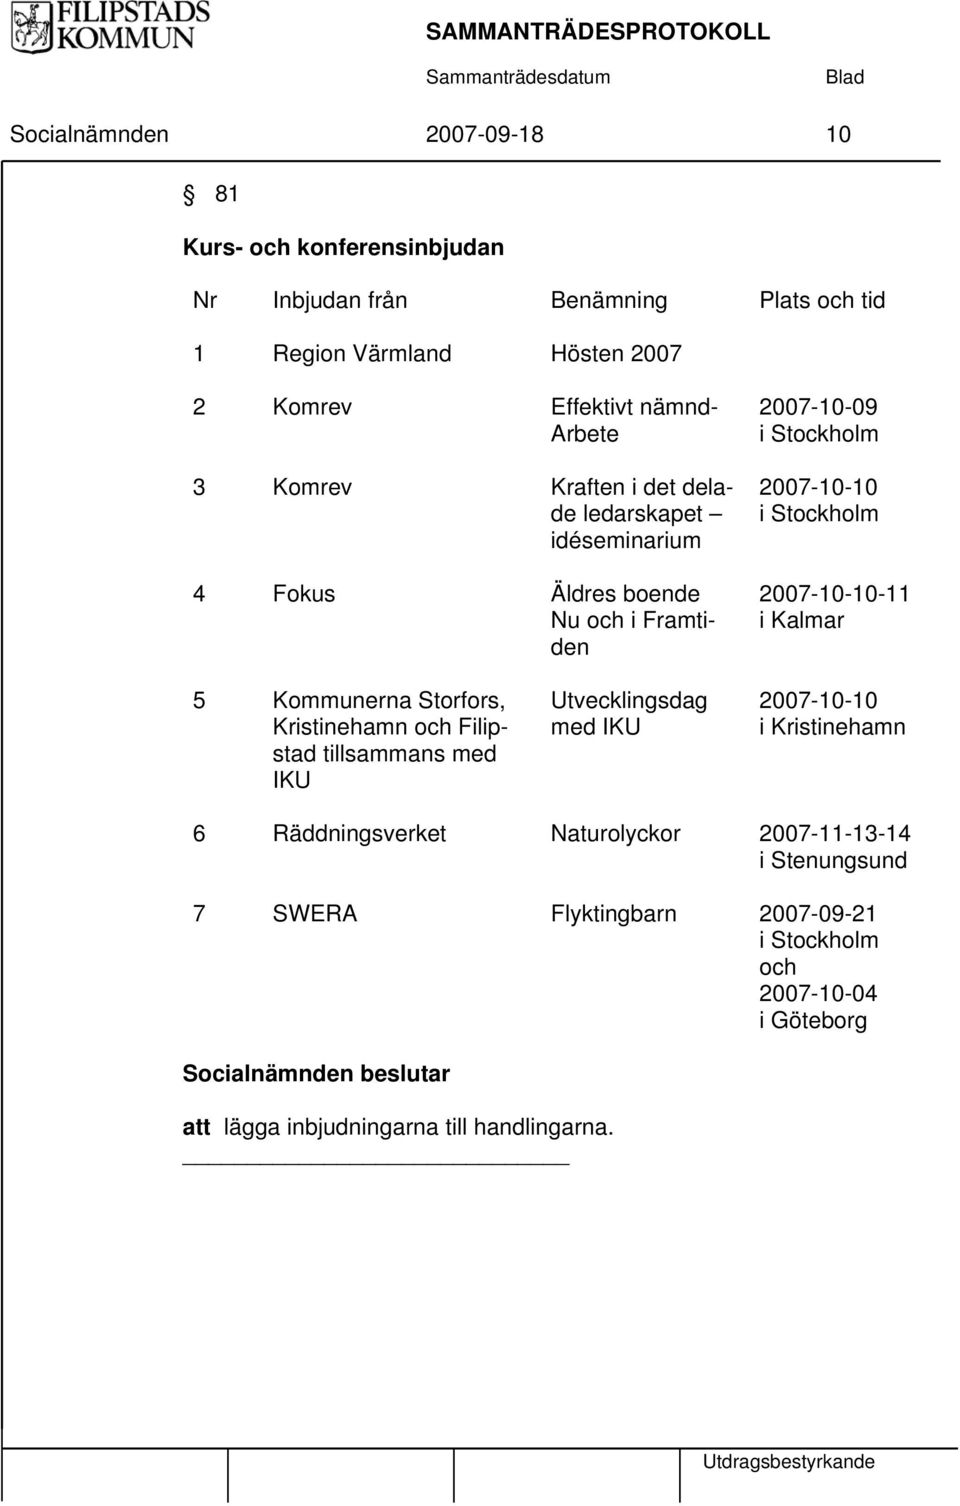 2007-10-10-11 i Kalmar 5 Kommunerna Storfors, Kristinehamn och Filipstad tillsammans med IKU Utvecklingsdag med IKU 2007-10-10 i Kristinehamn 6 Räddningsverket